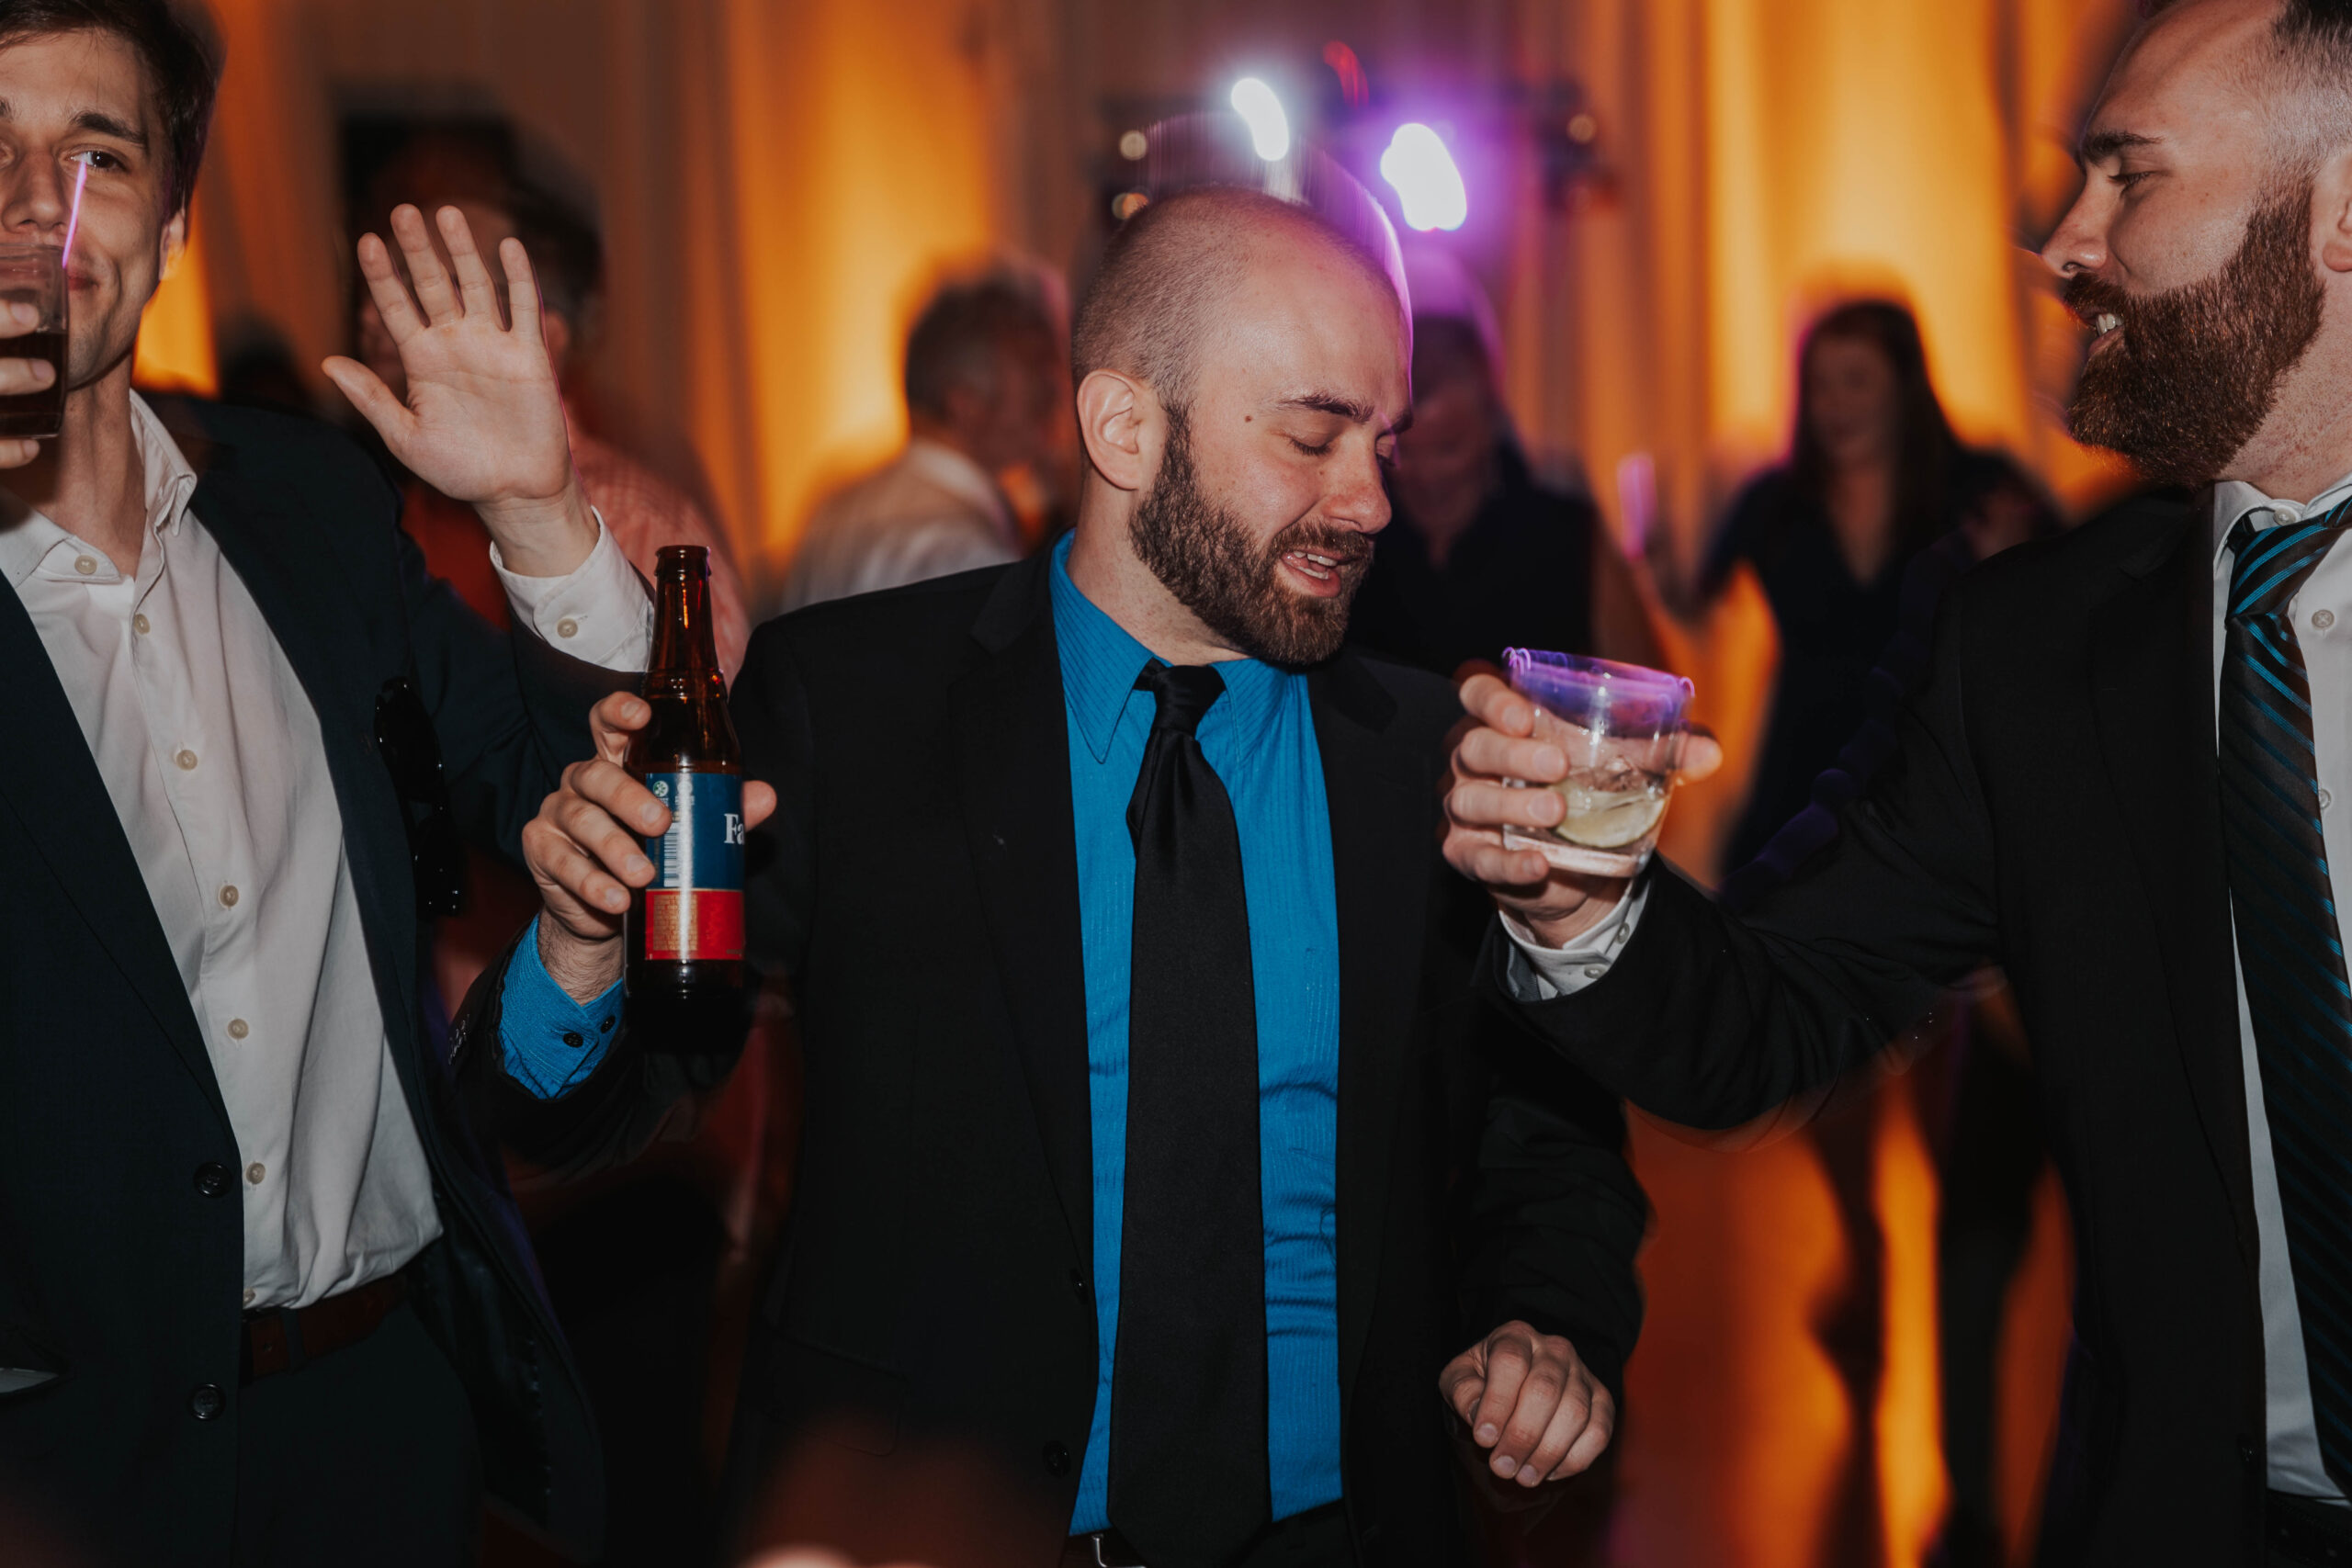 Wedding Guest Drinks Beer And Dances